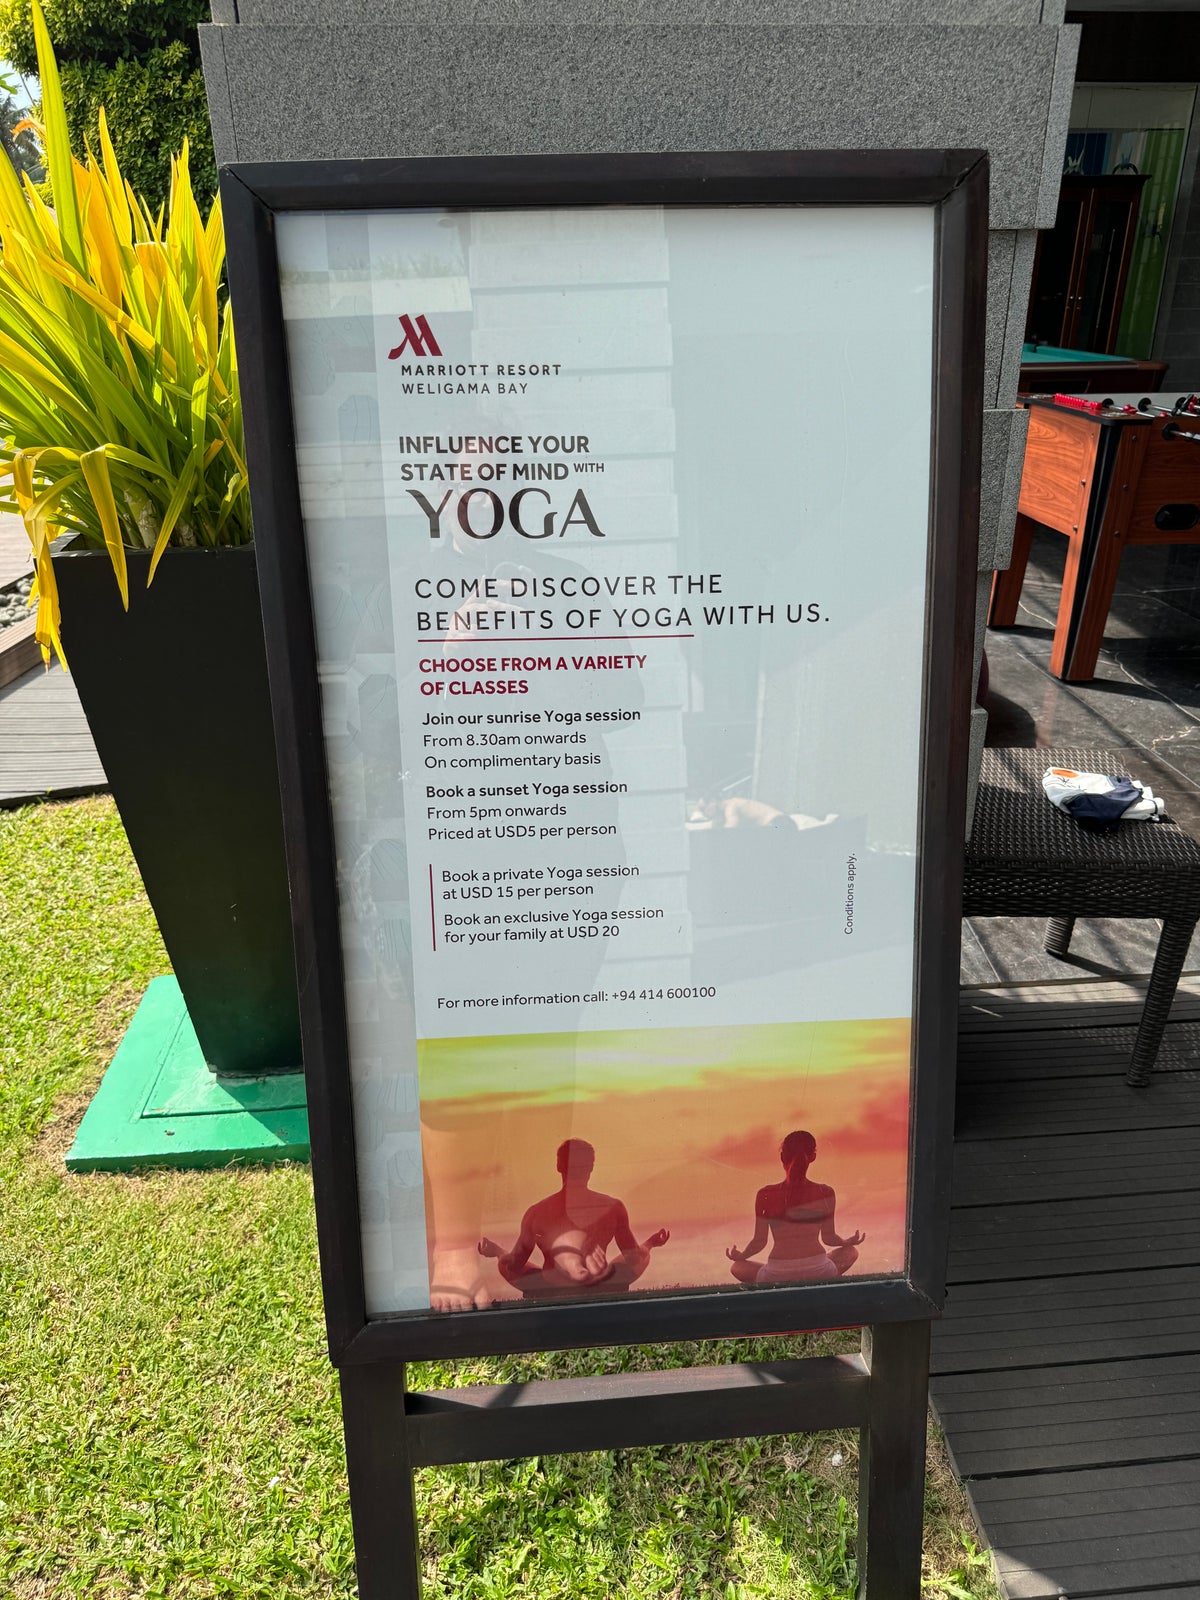 Weligama Bay Marriott yoga